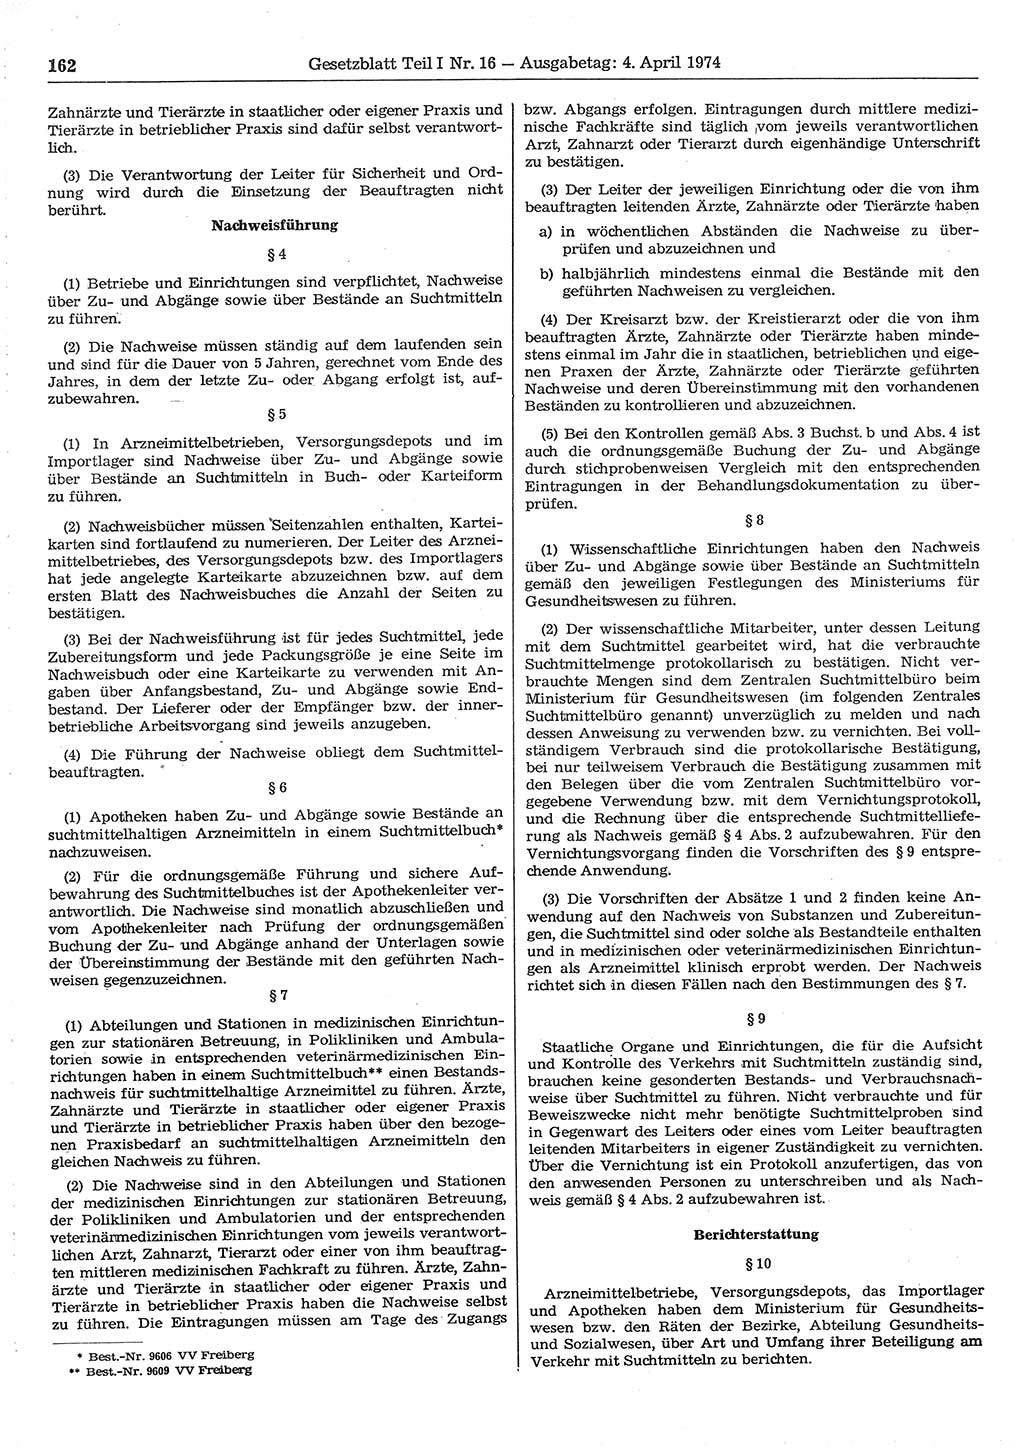 Gesetzblatt (GBl.) der Deutschen Demokratischen Republik (DDR) Teil Ⅰ 1974, Seite 162 (GBl. DDR Ⅰ 1974, S. 162)